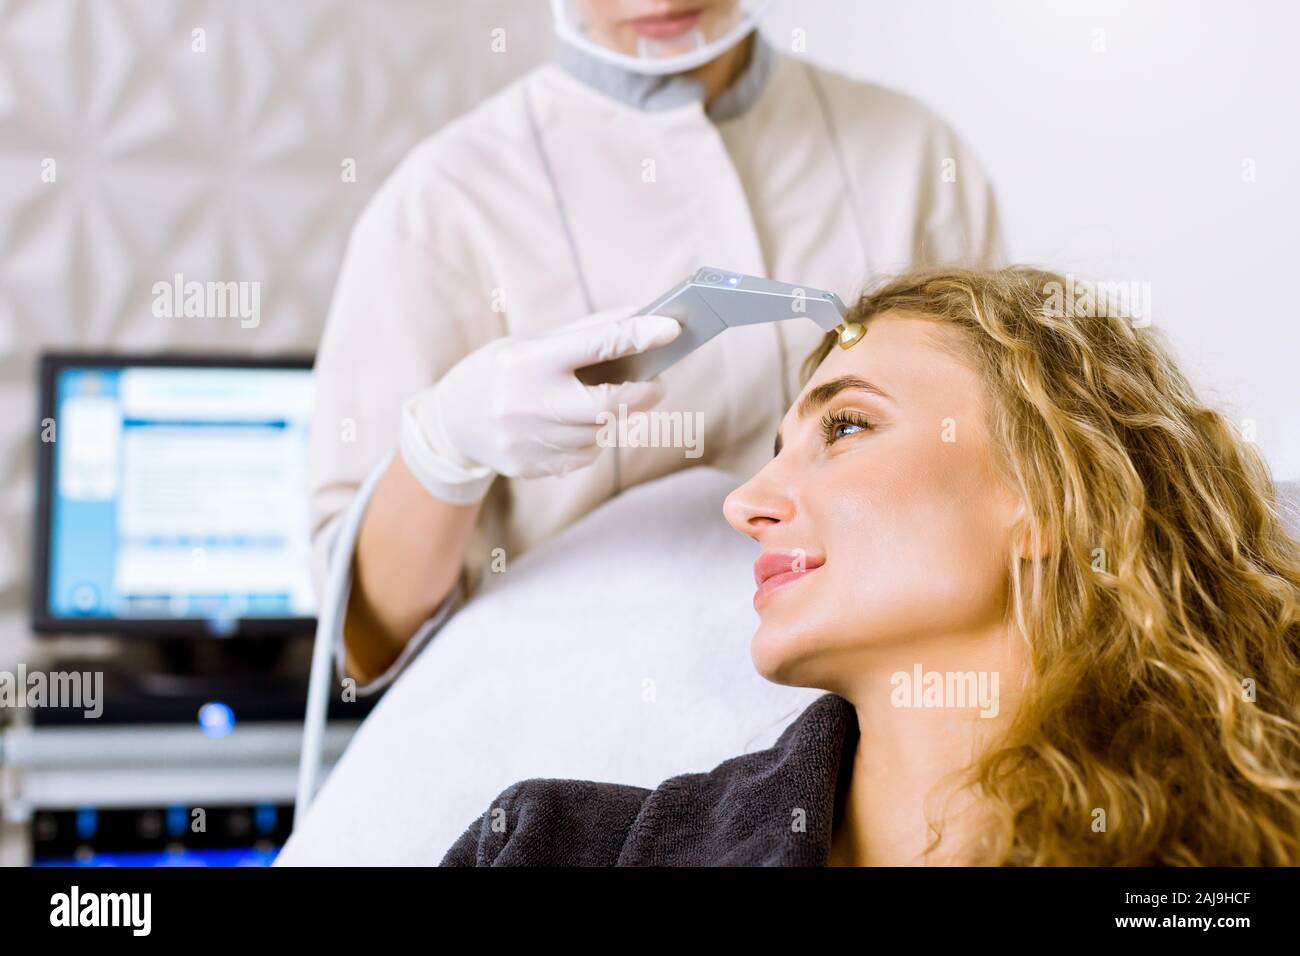 Seitenansicht der junge blonde Frau, die Massage - Microdermabrasion in  modernen cosmetological Klinik. Mechanische Peeling, Diamant polieren.  Gesundheit Stockfotografie - Alamy